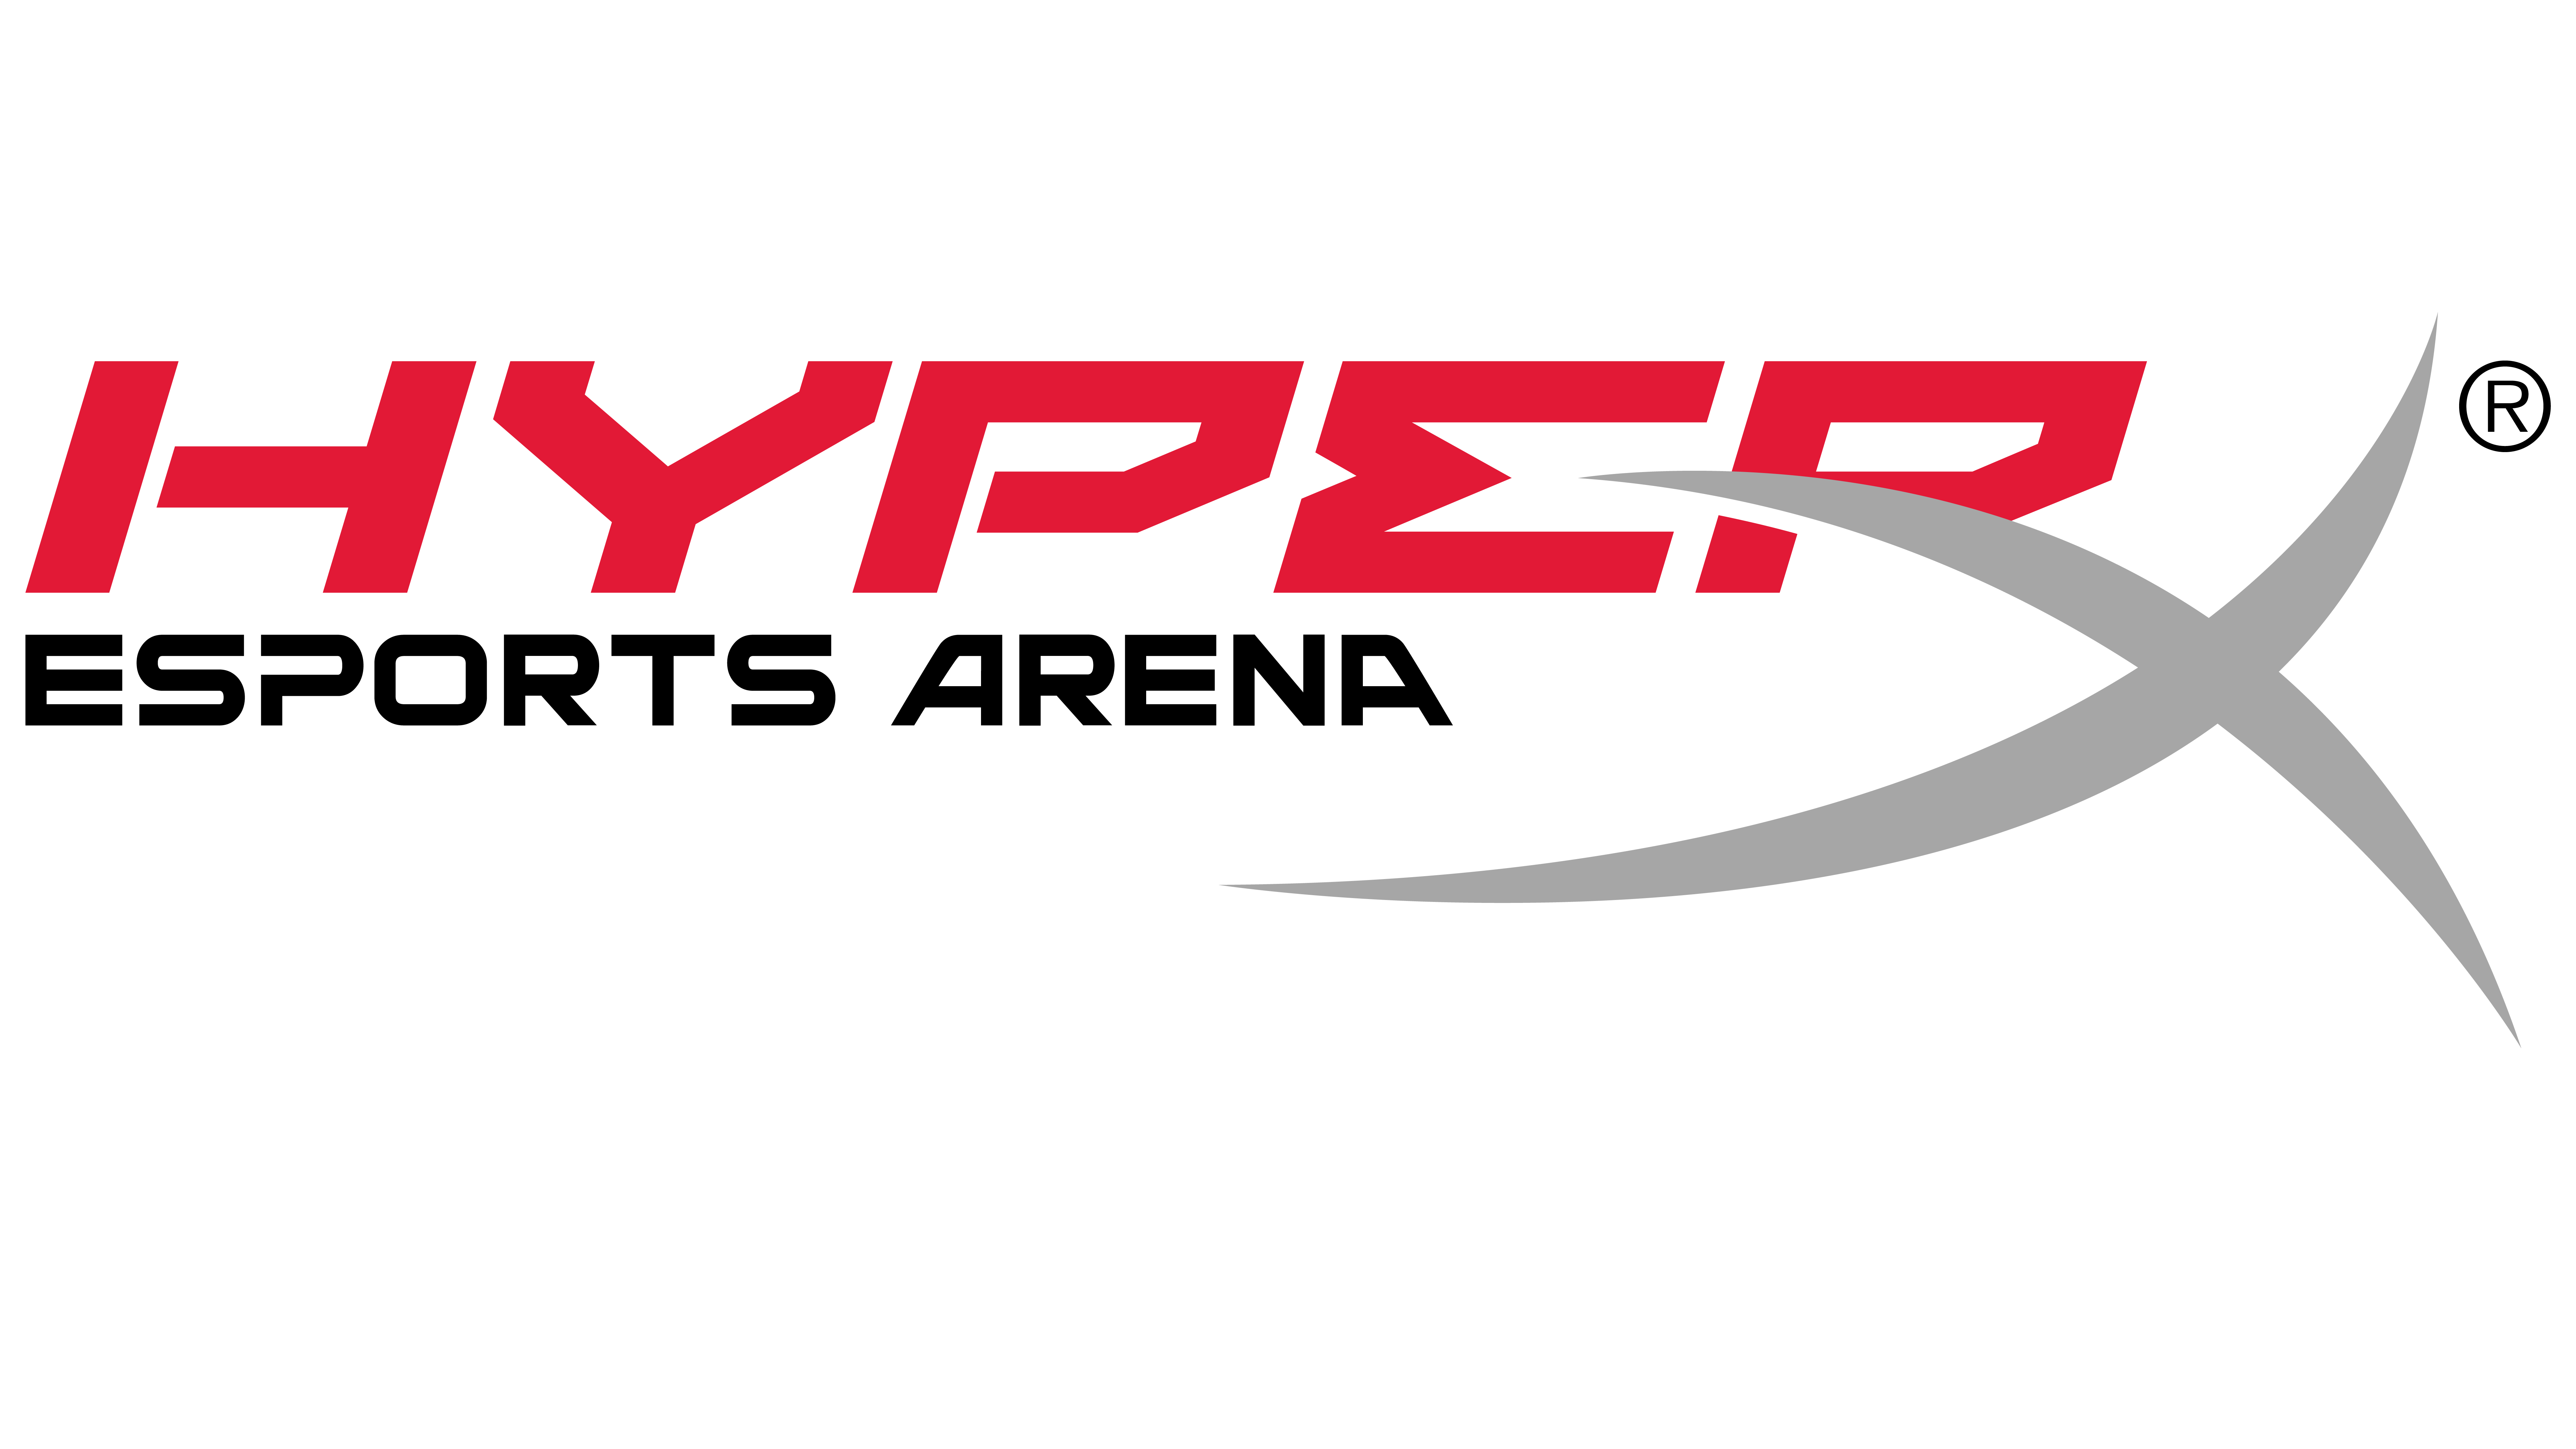 HyperX Gaming